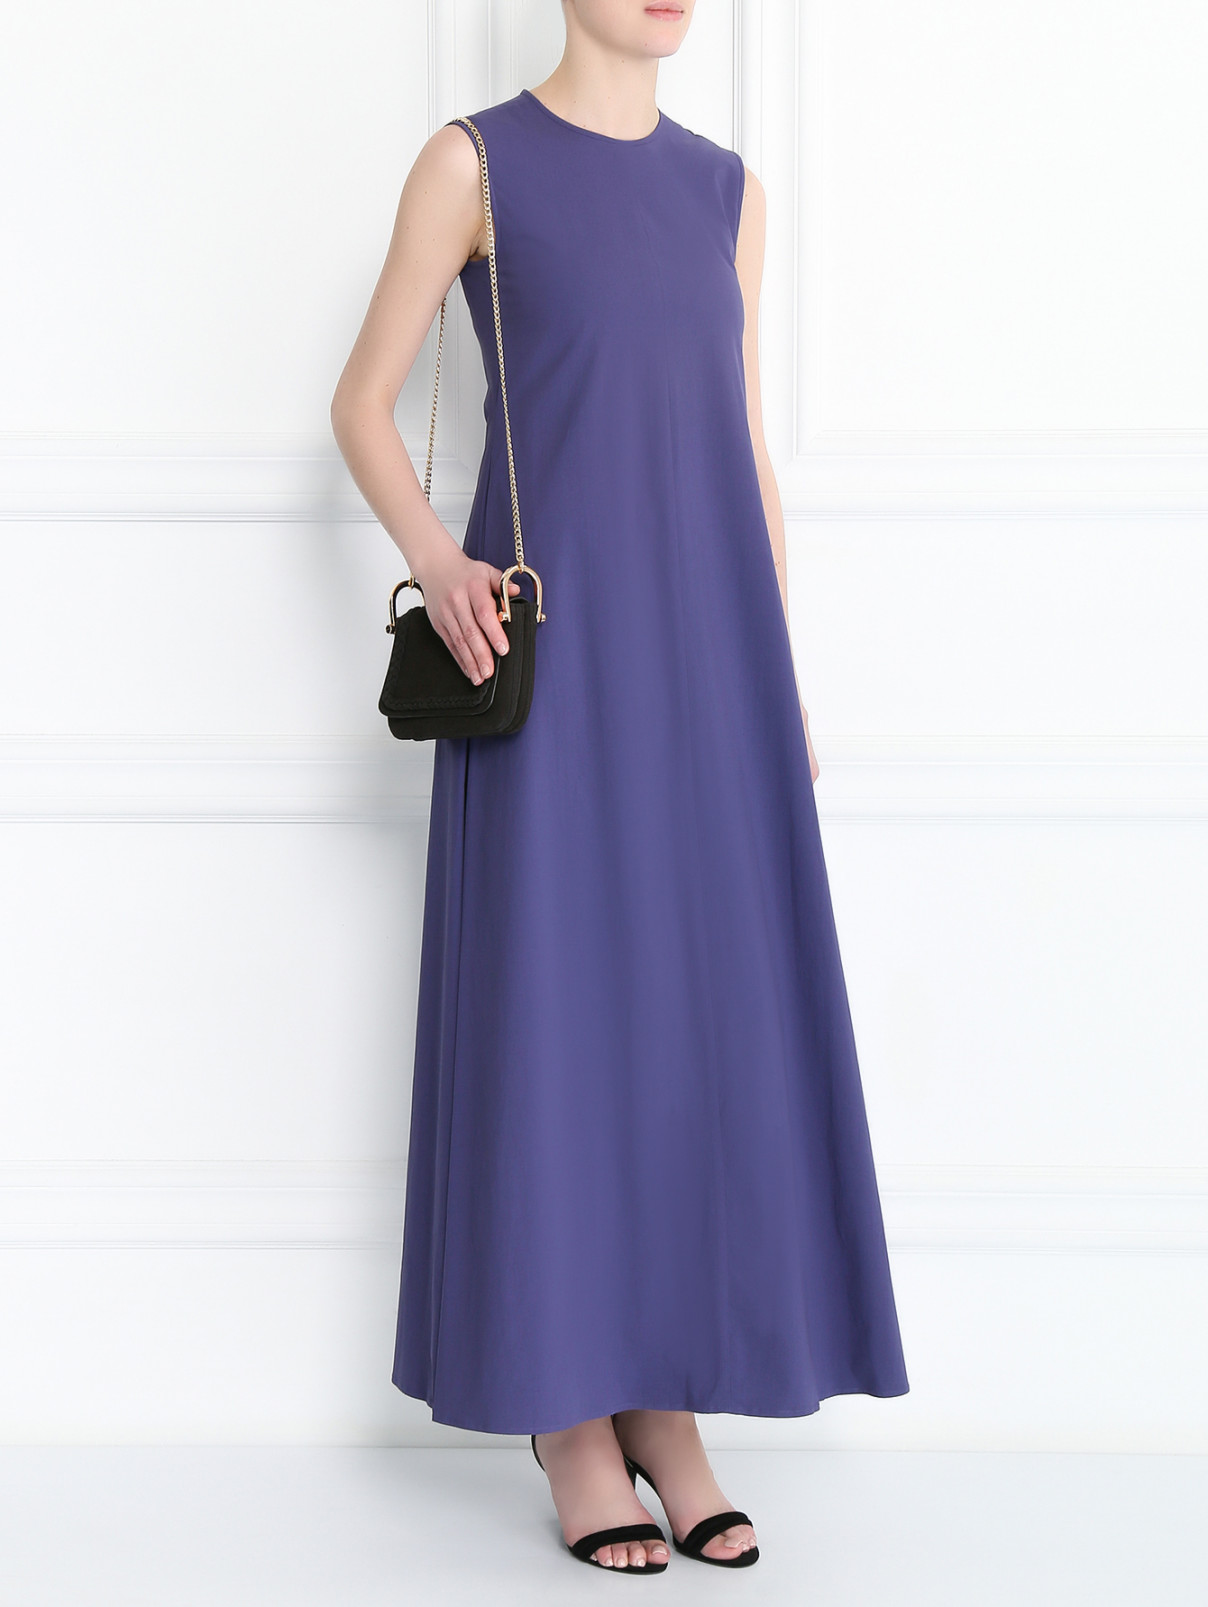 Платье-макси из хлопка с карманами S Max Mara  –  Модель Общий вид  – Цвет:  Фиолетовый